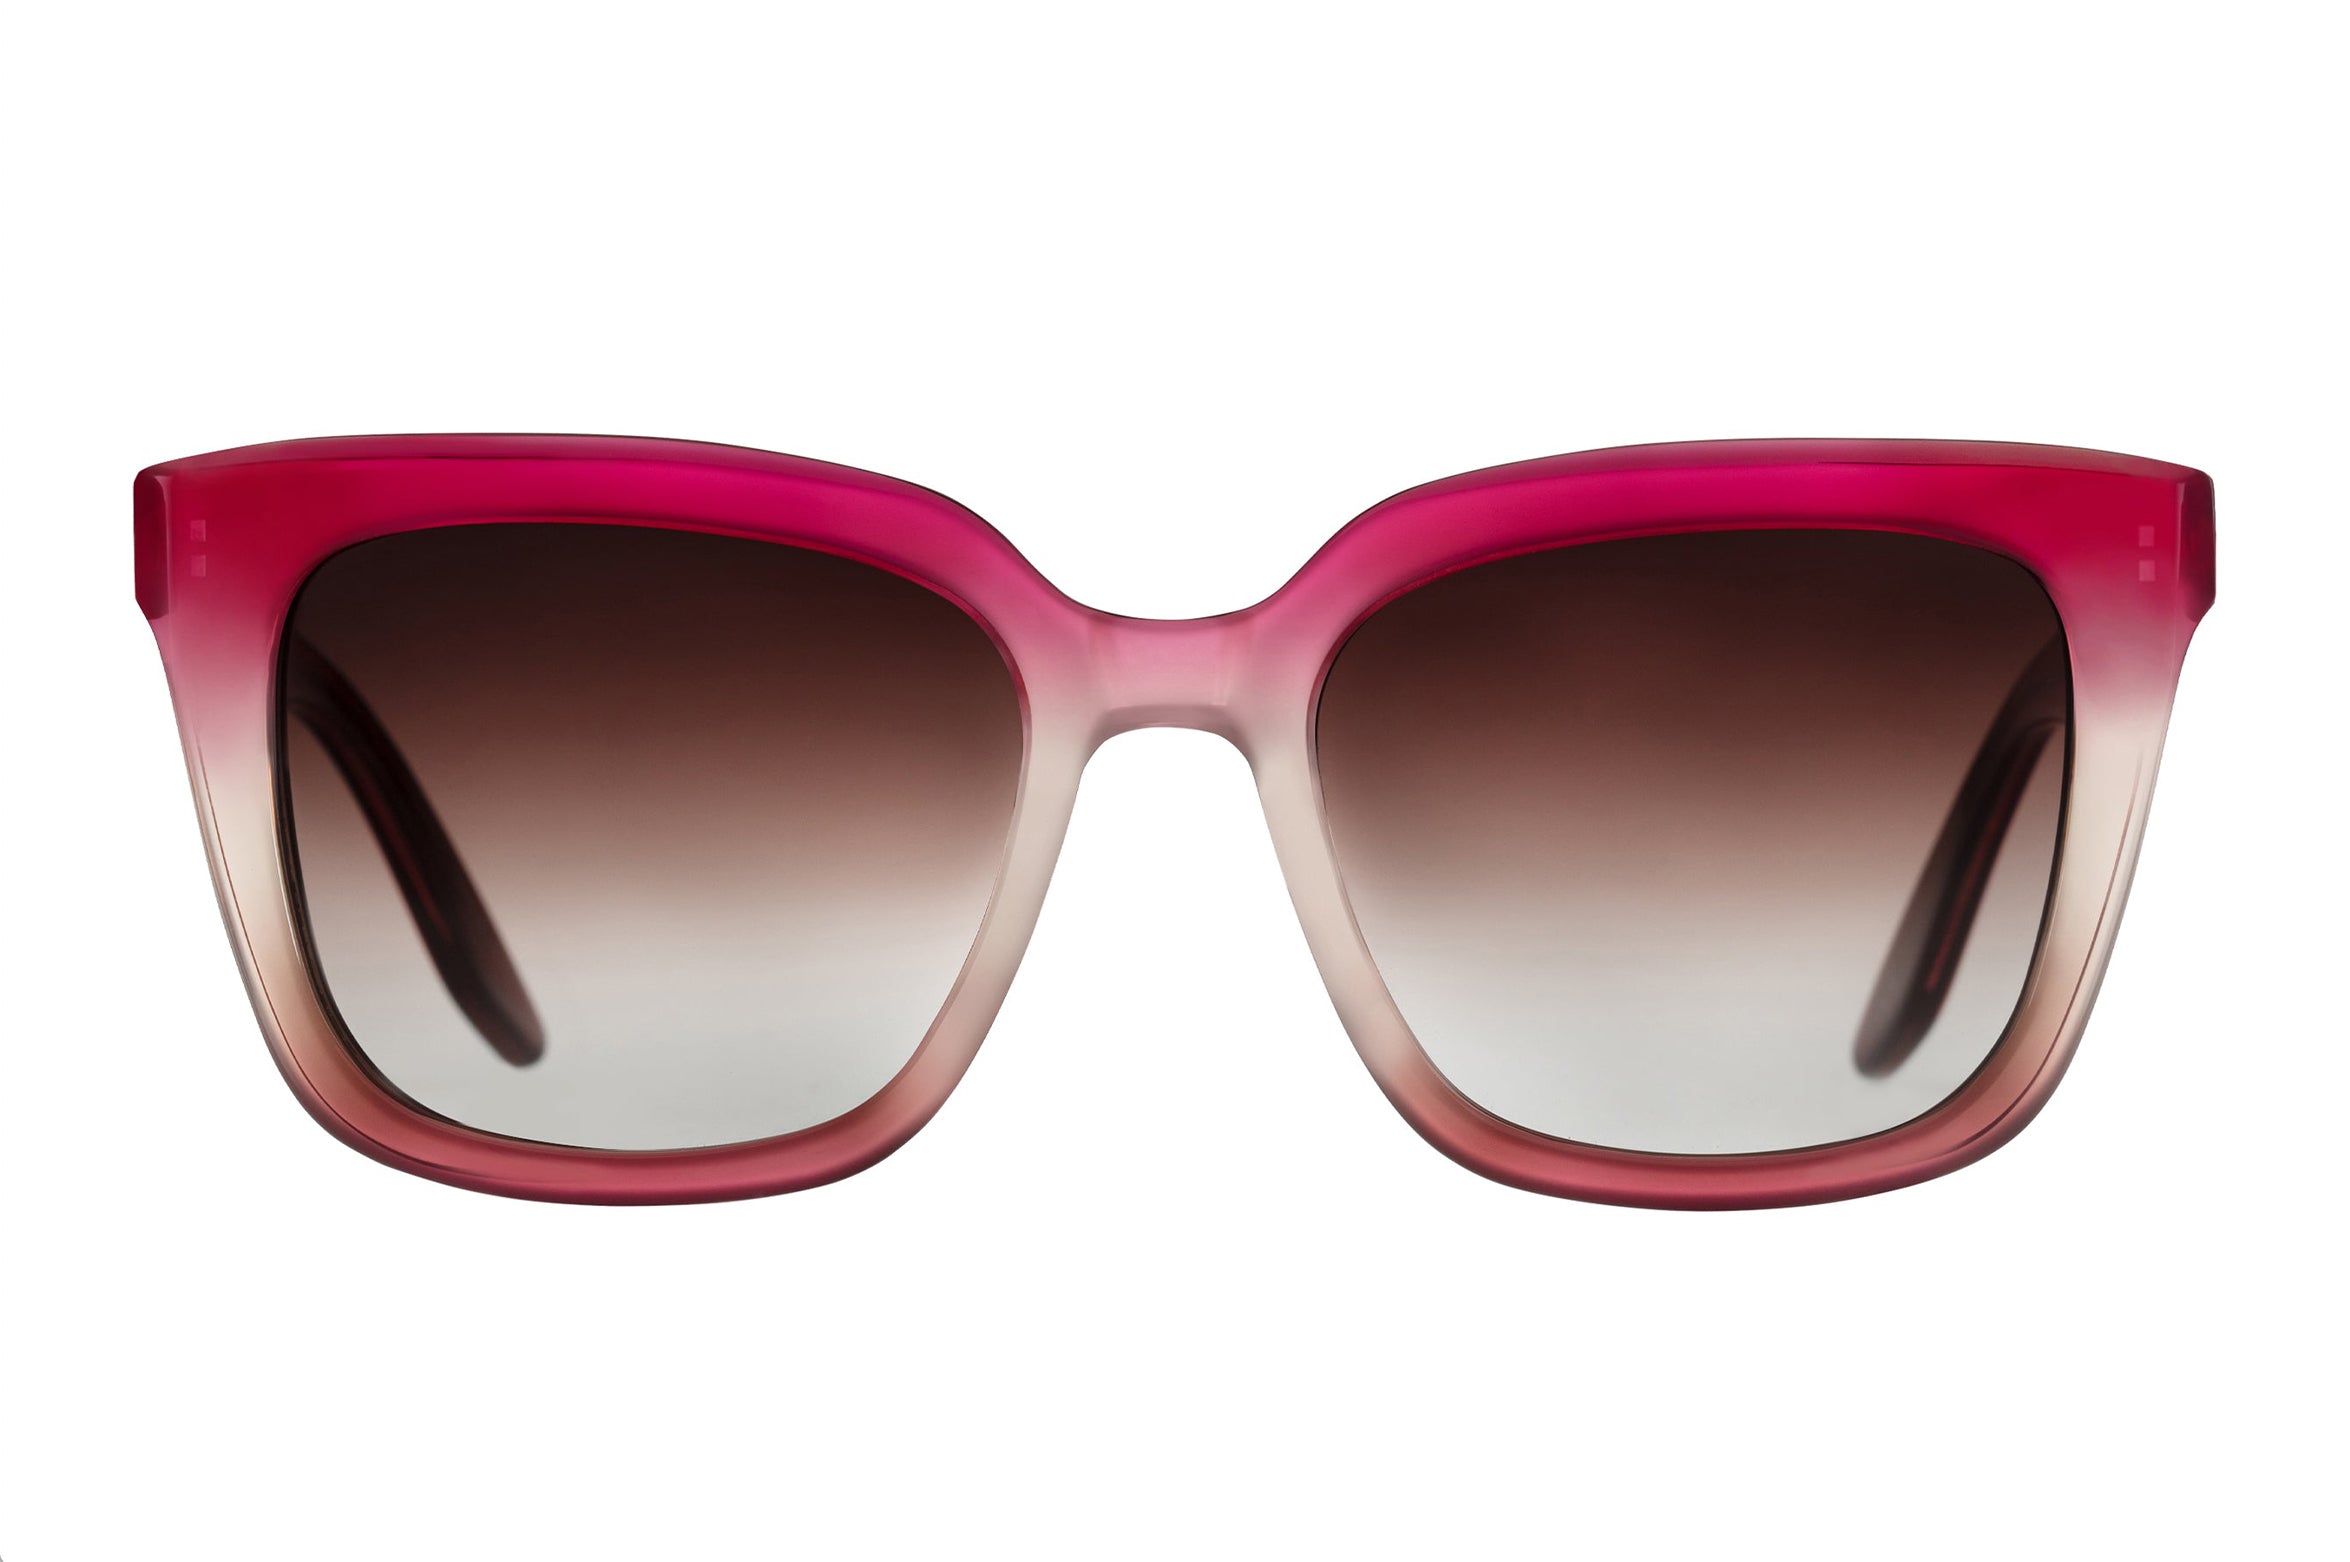 Women's Bolsha Glasses - Gradient Sunglasses